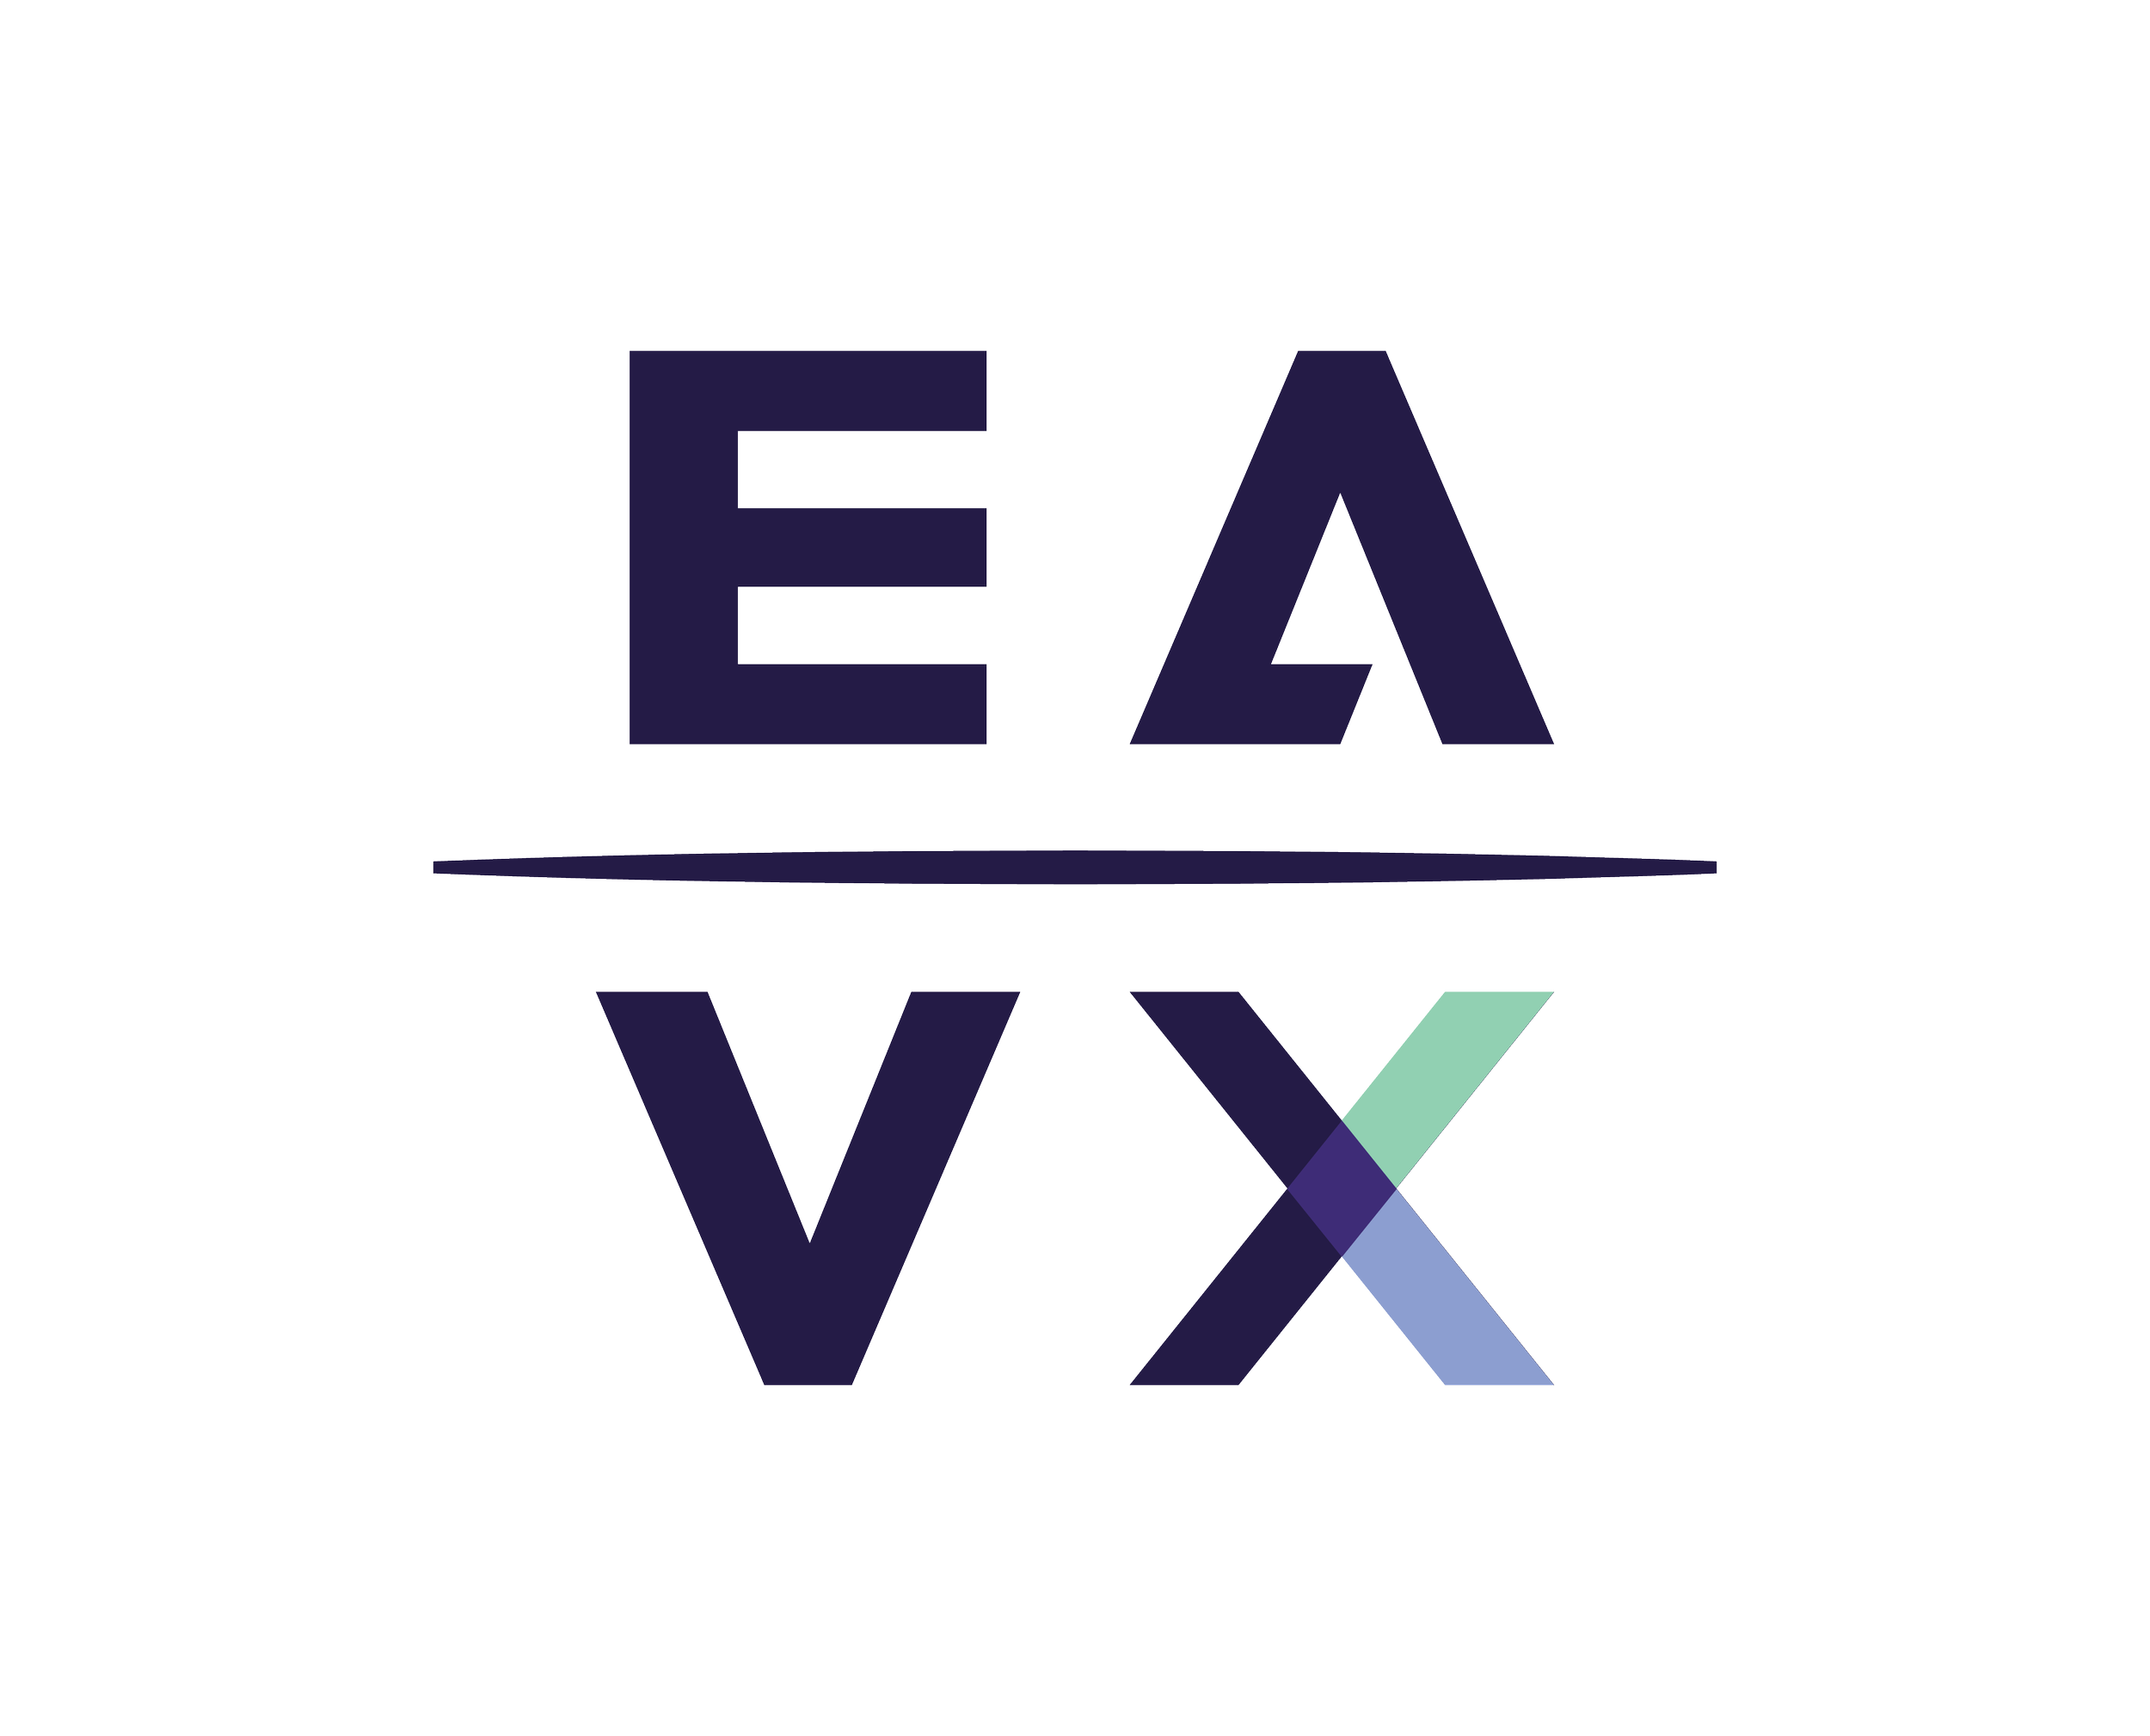 EAVX-20220986_EAVX_color.png